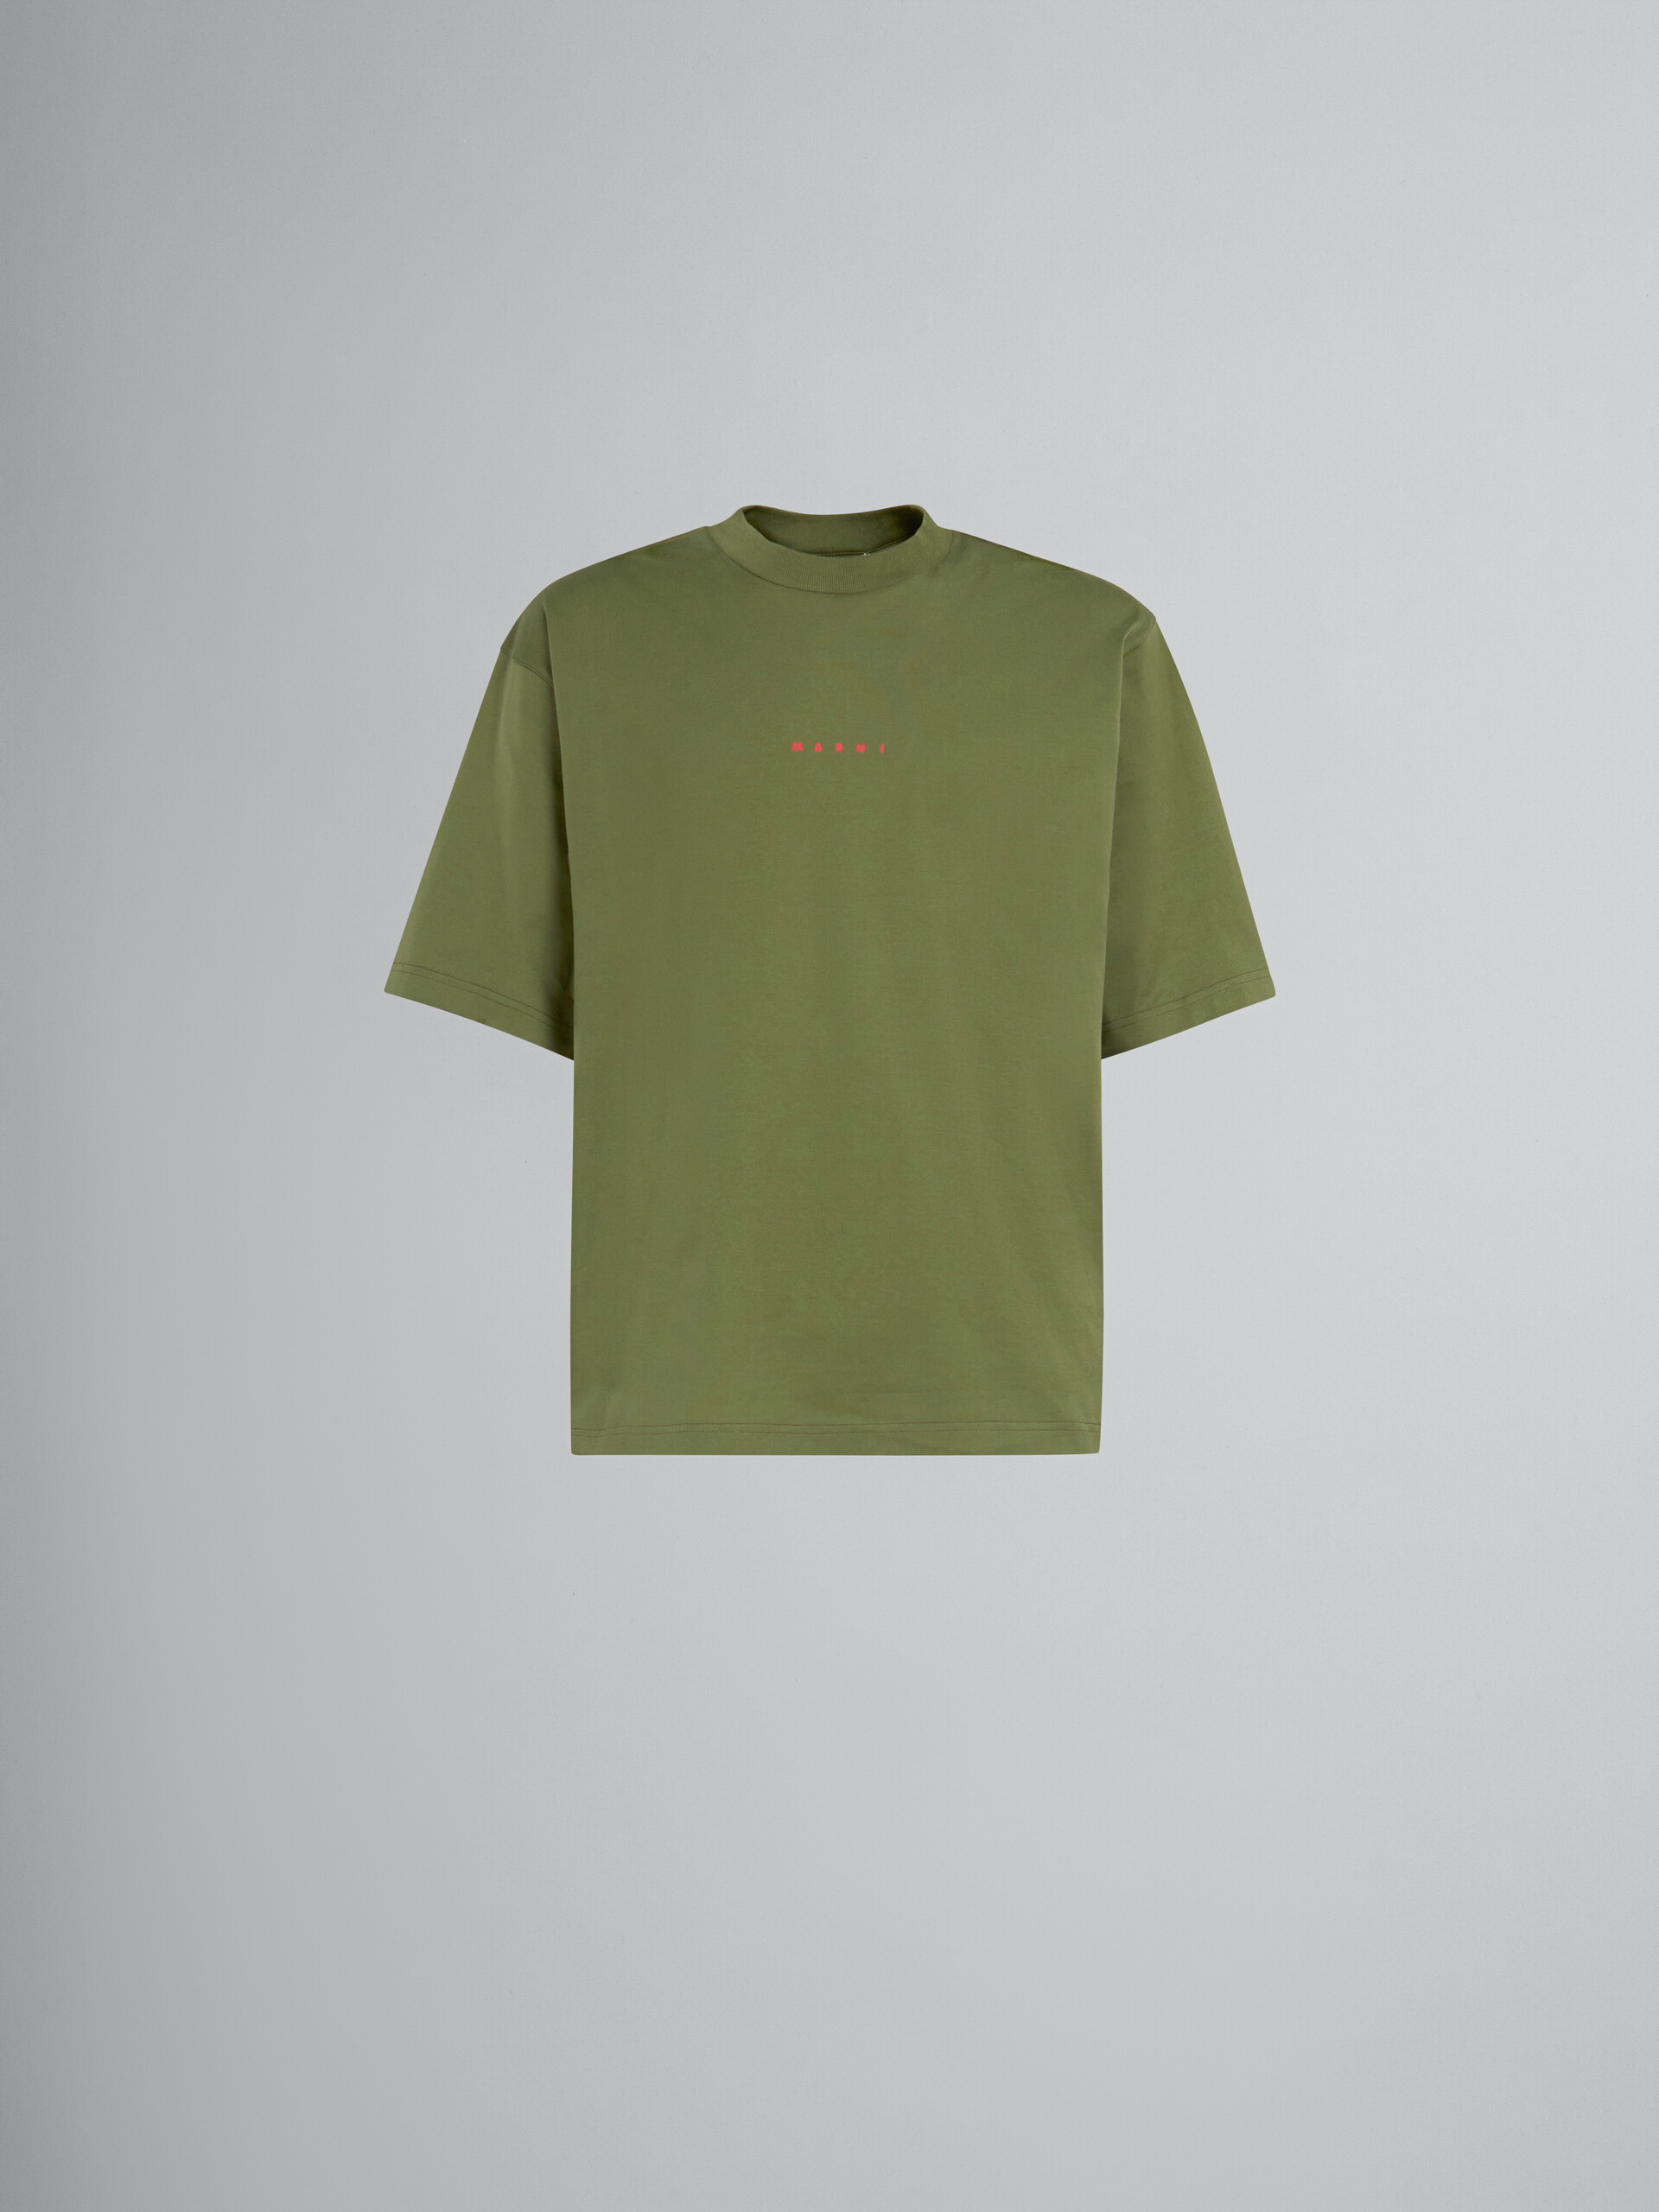 T-shirt en coton biologique vert avec logo - T-shirts - Image 1